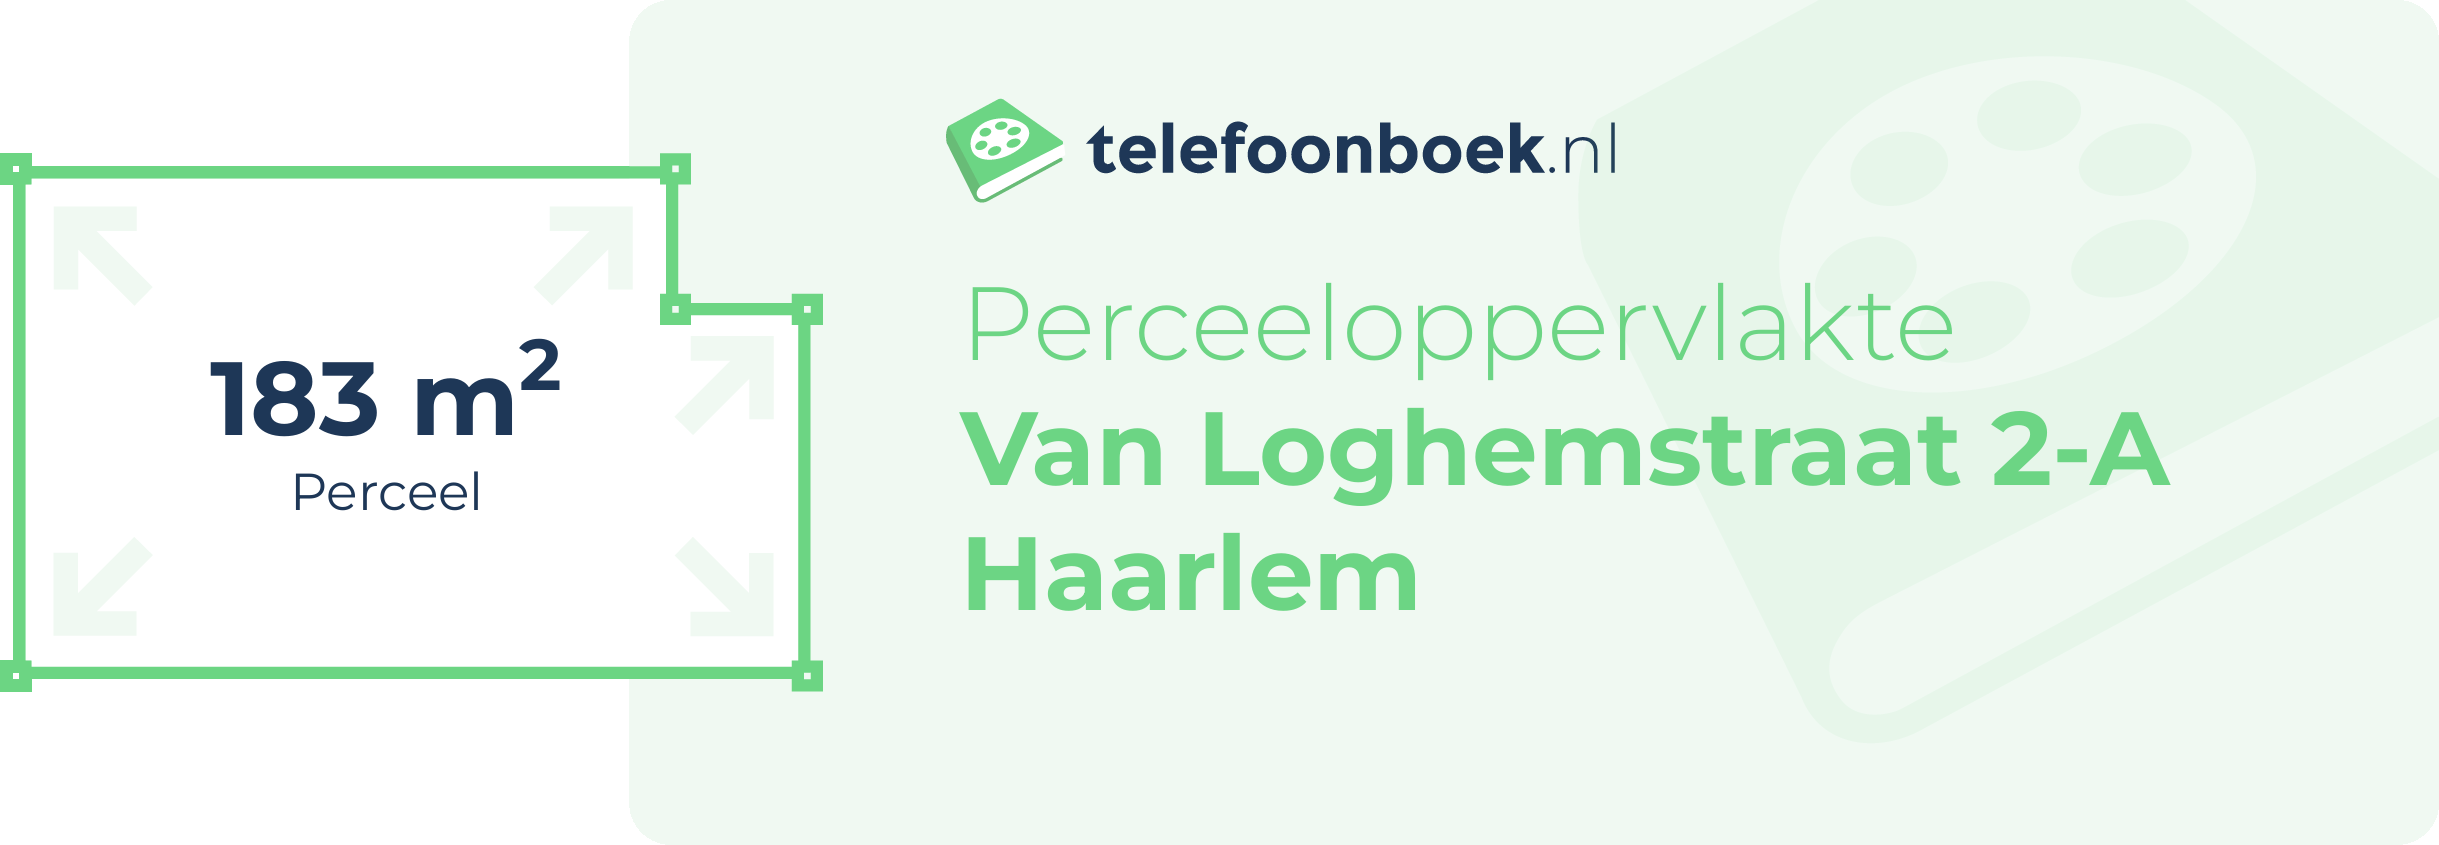 Perceeloppervlakte Van Loghemstraat 2-A Haarlem